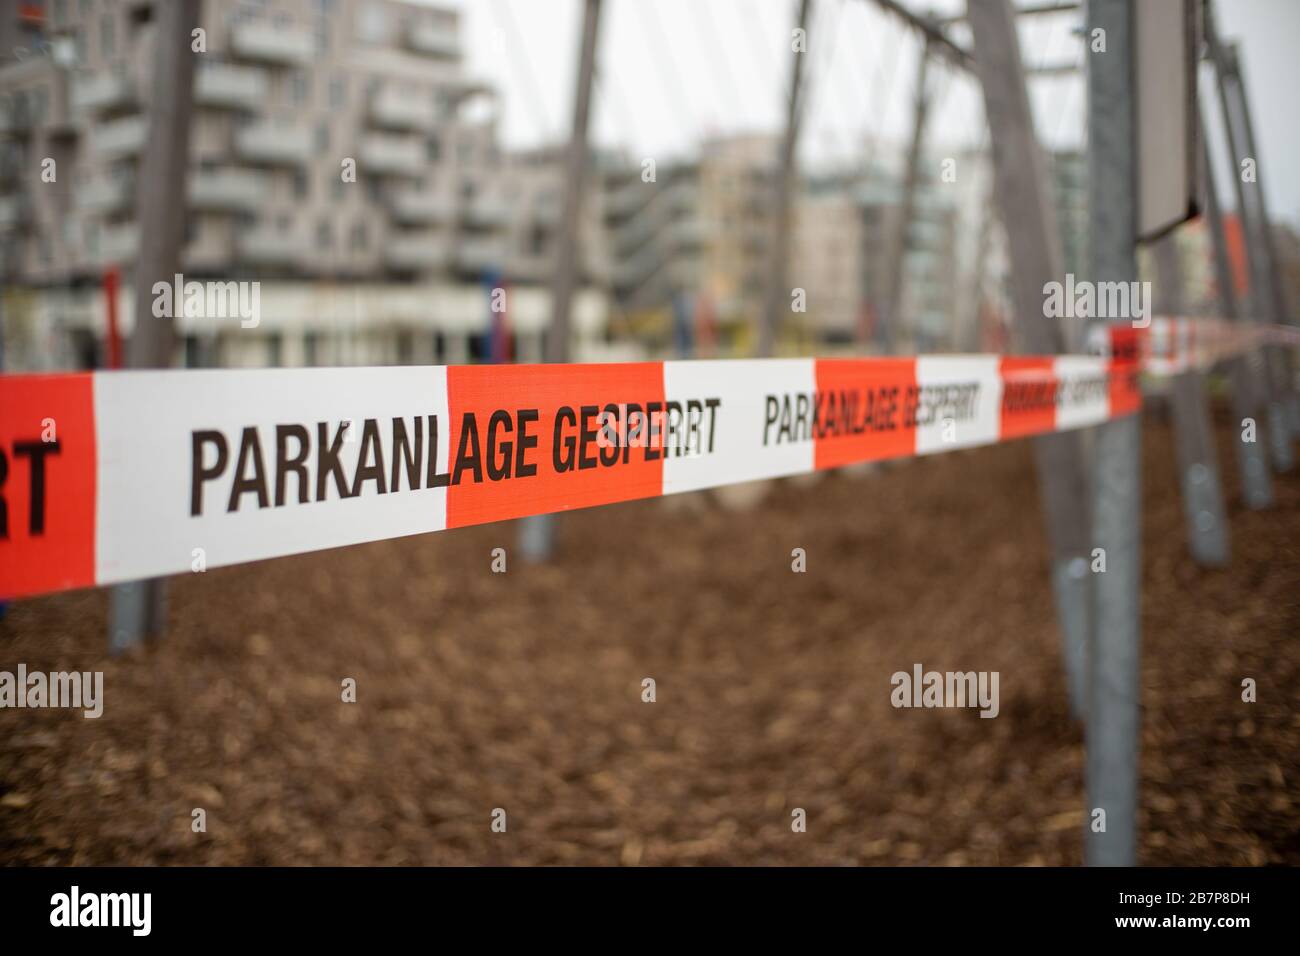 Wien, Österreich - 03.17.2020 Spielplatz wegen Corona-Viruskrise geschlossen. Die deutschen Wörter "Parkanlage geperrt" bedeuten, dass der Spielplatz geschlossen ist. Stockfoto